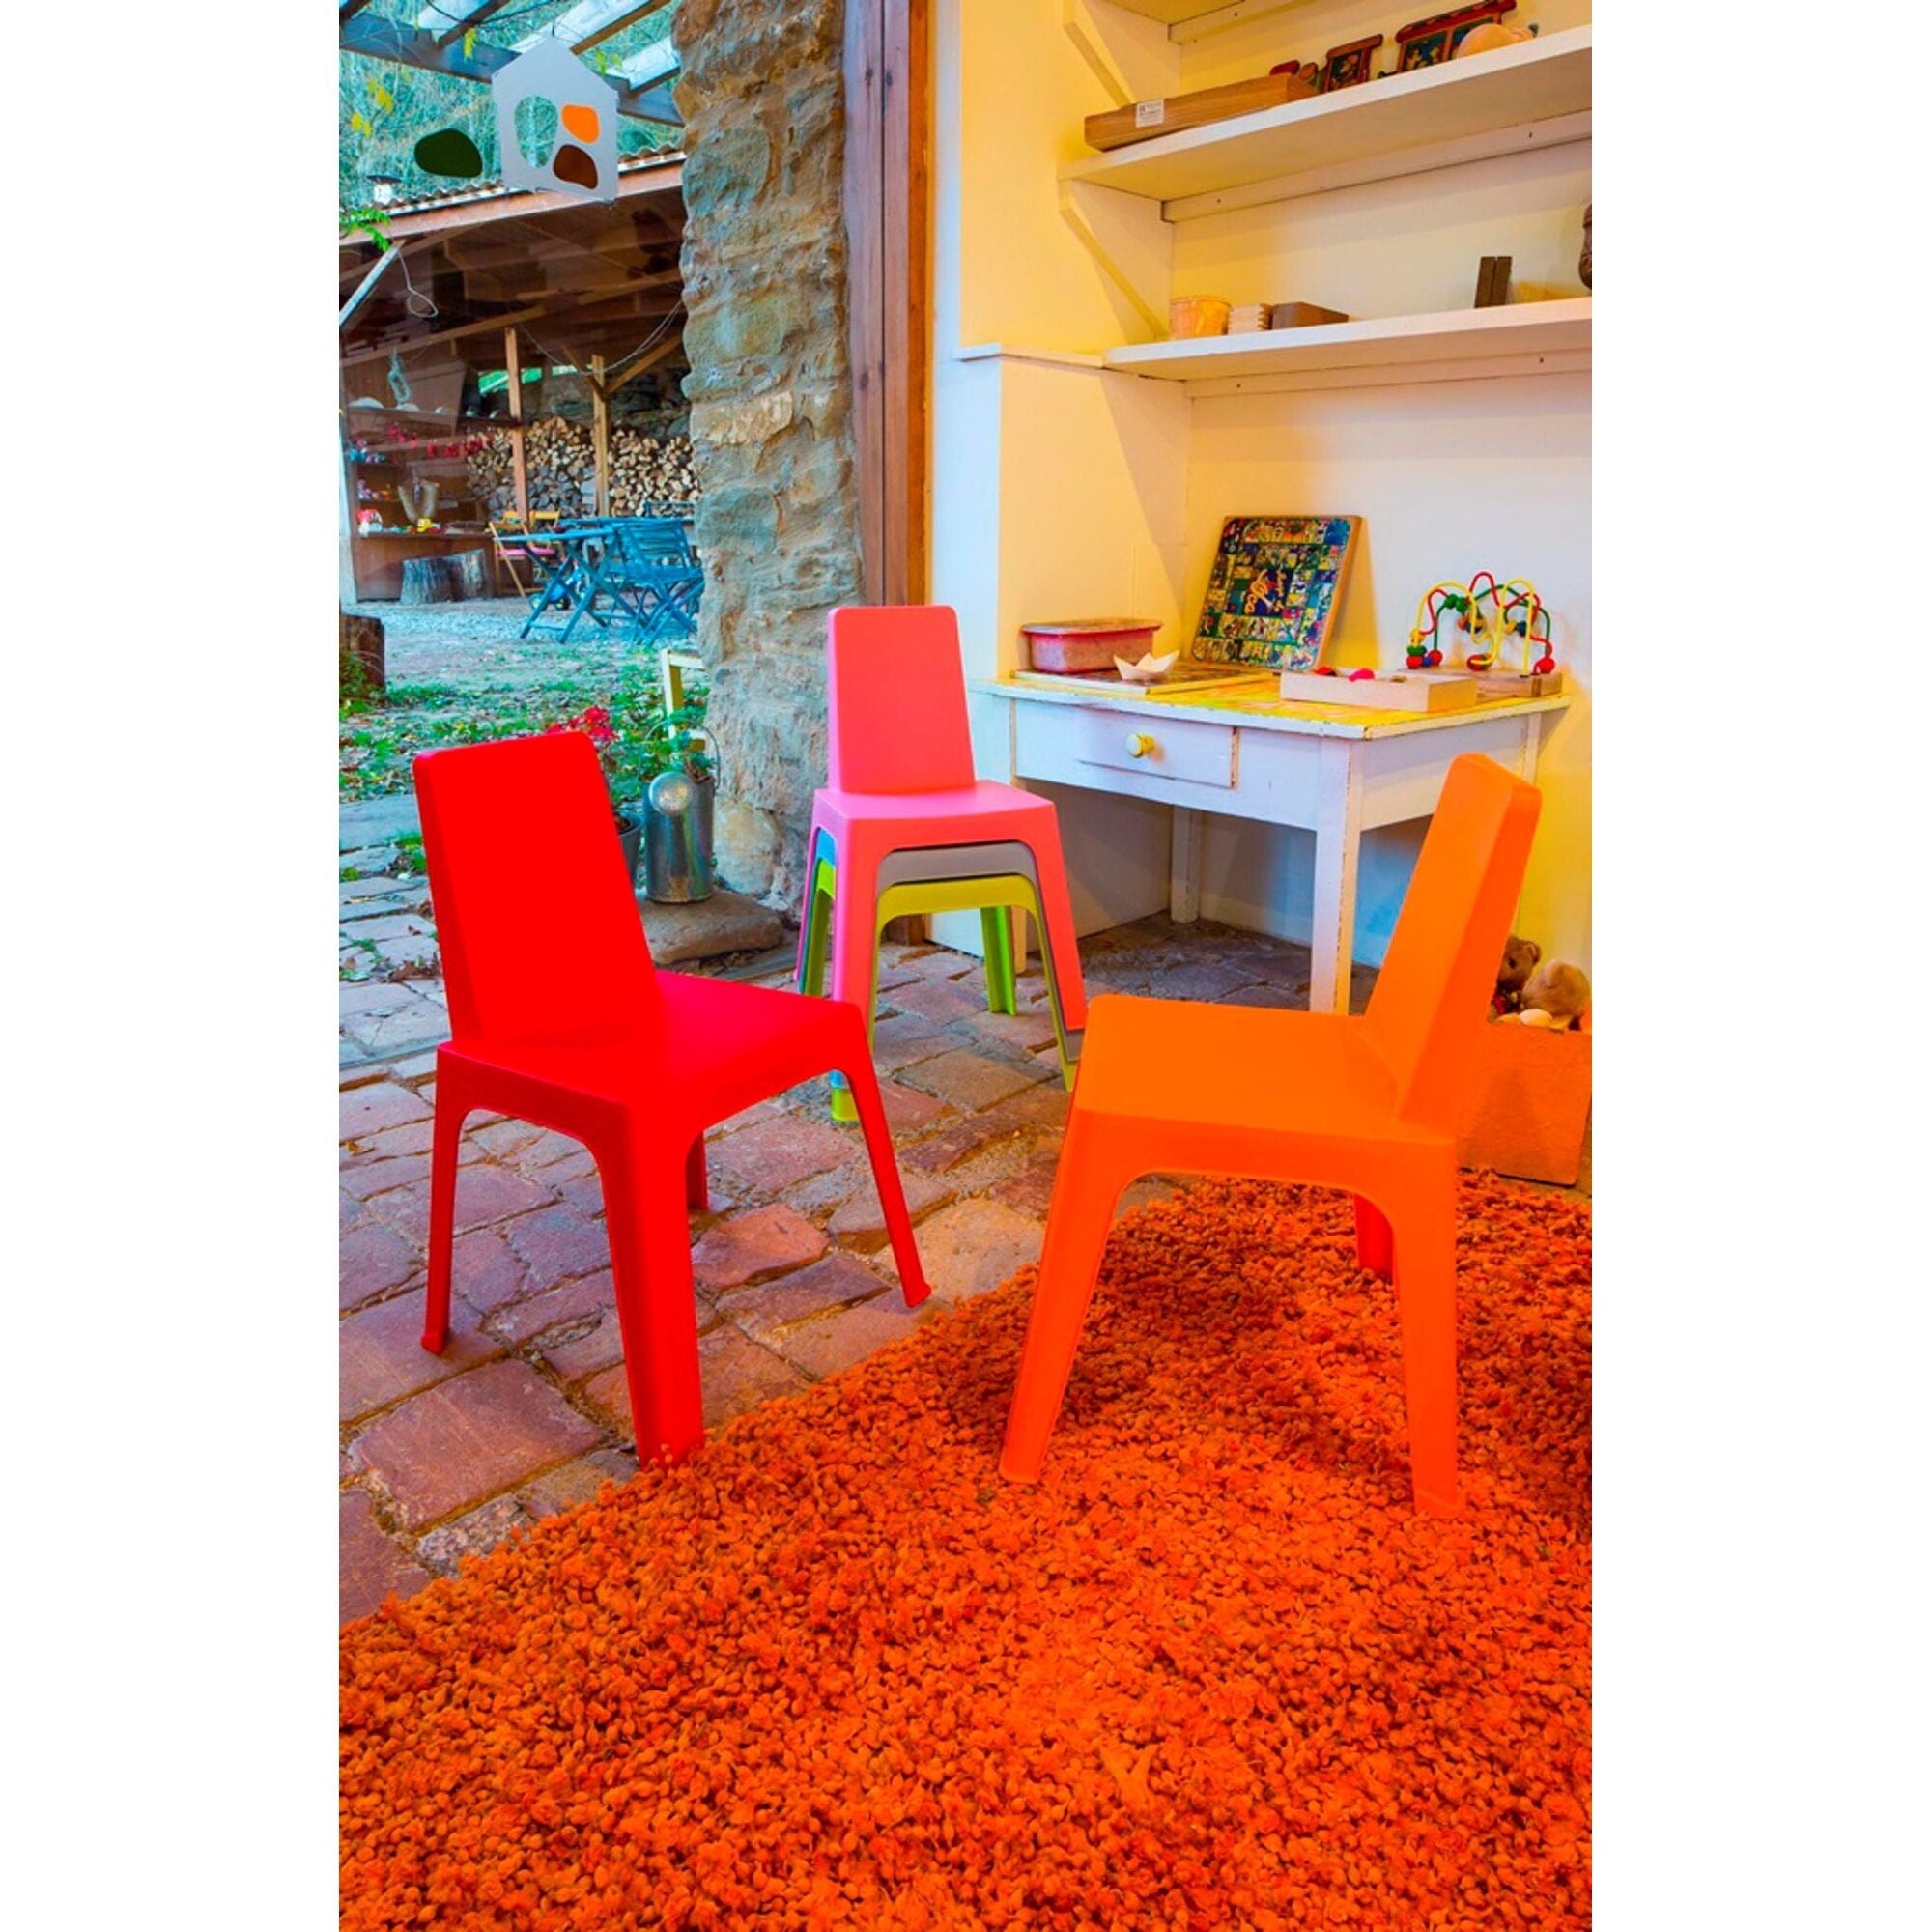 Garbar Julieta children's chair table indoors, outdoor set 2+1 orange